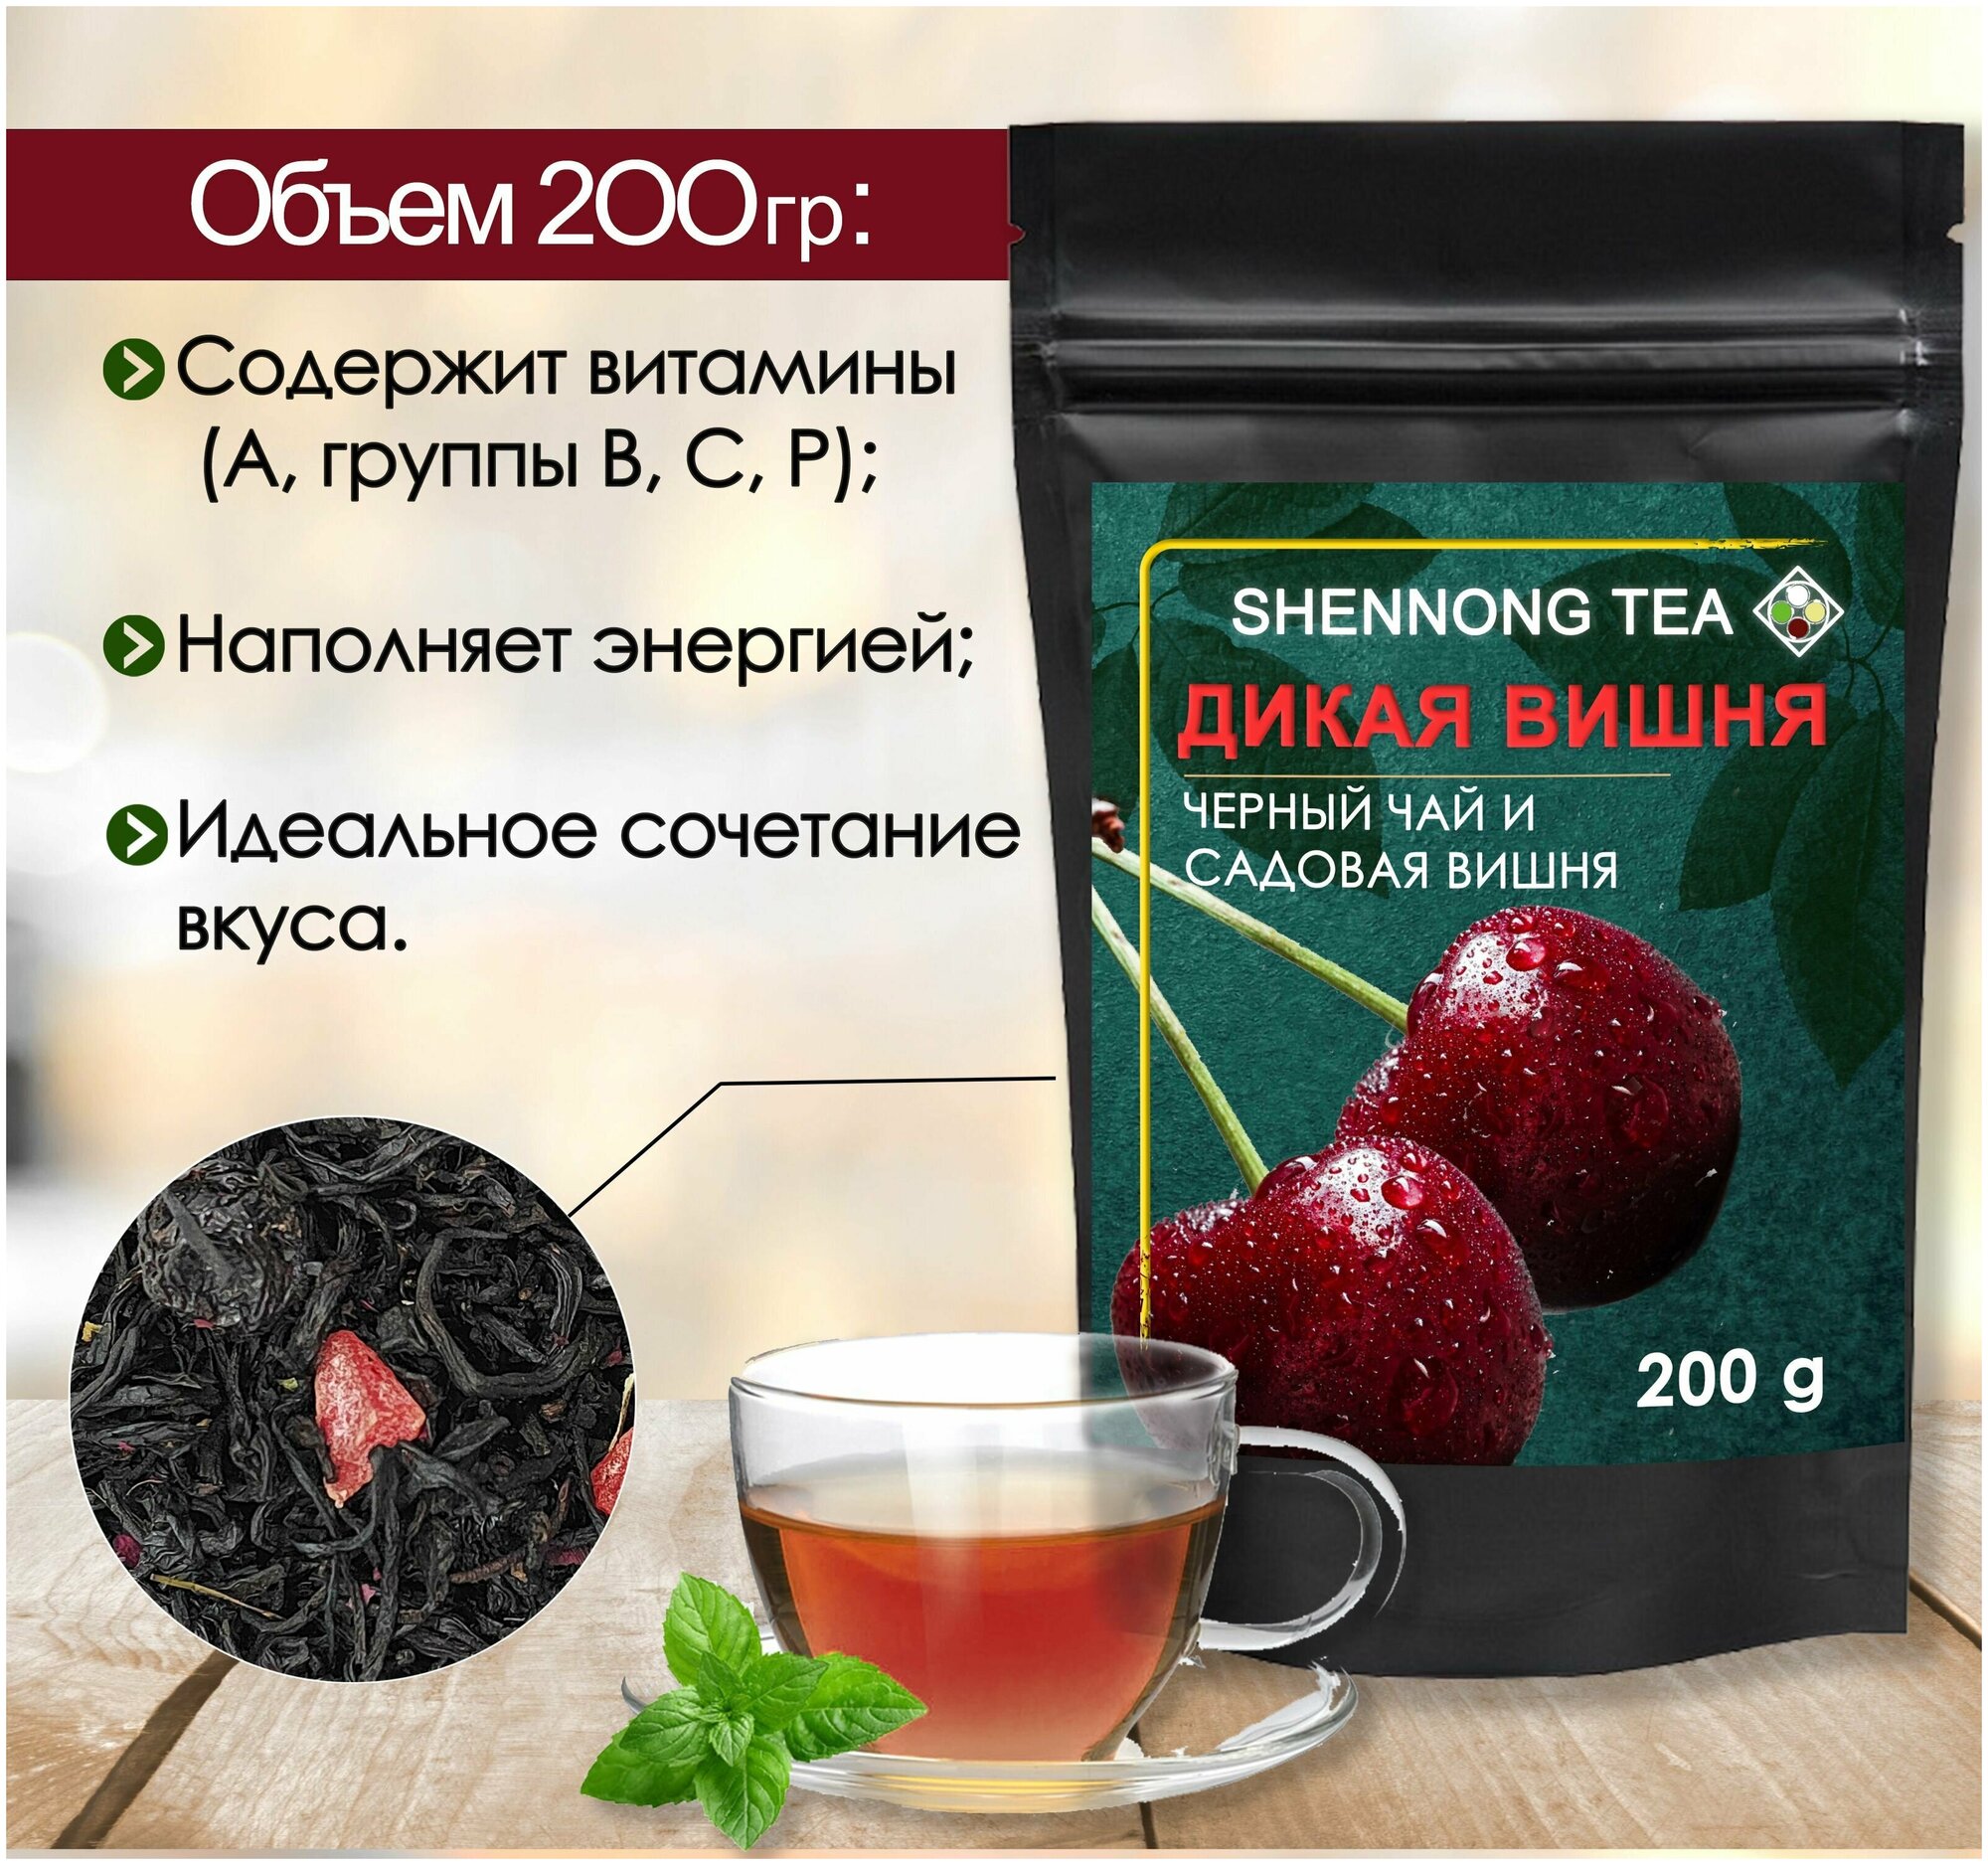 Фруктовый черный чай "Дикая Вишня", 200гр, чайный напиток с натуральными ягодами спелой вишни и цукатами